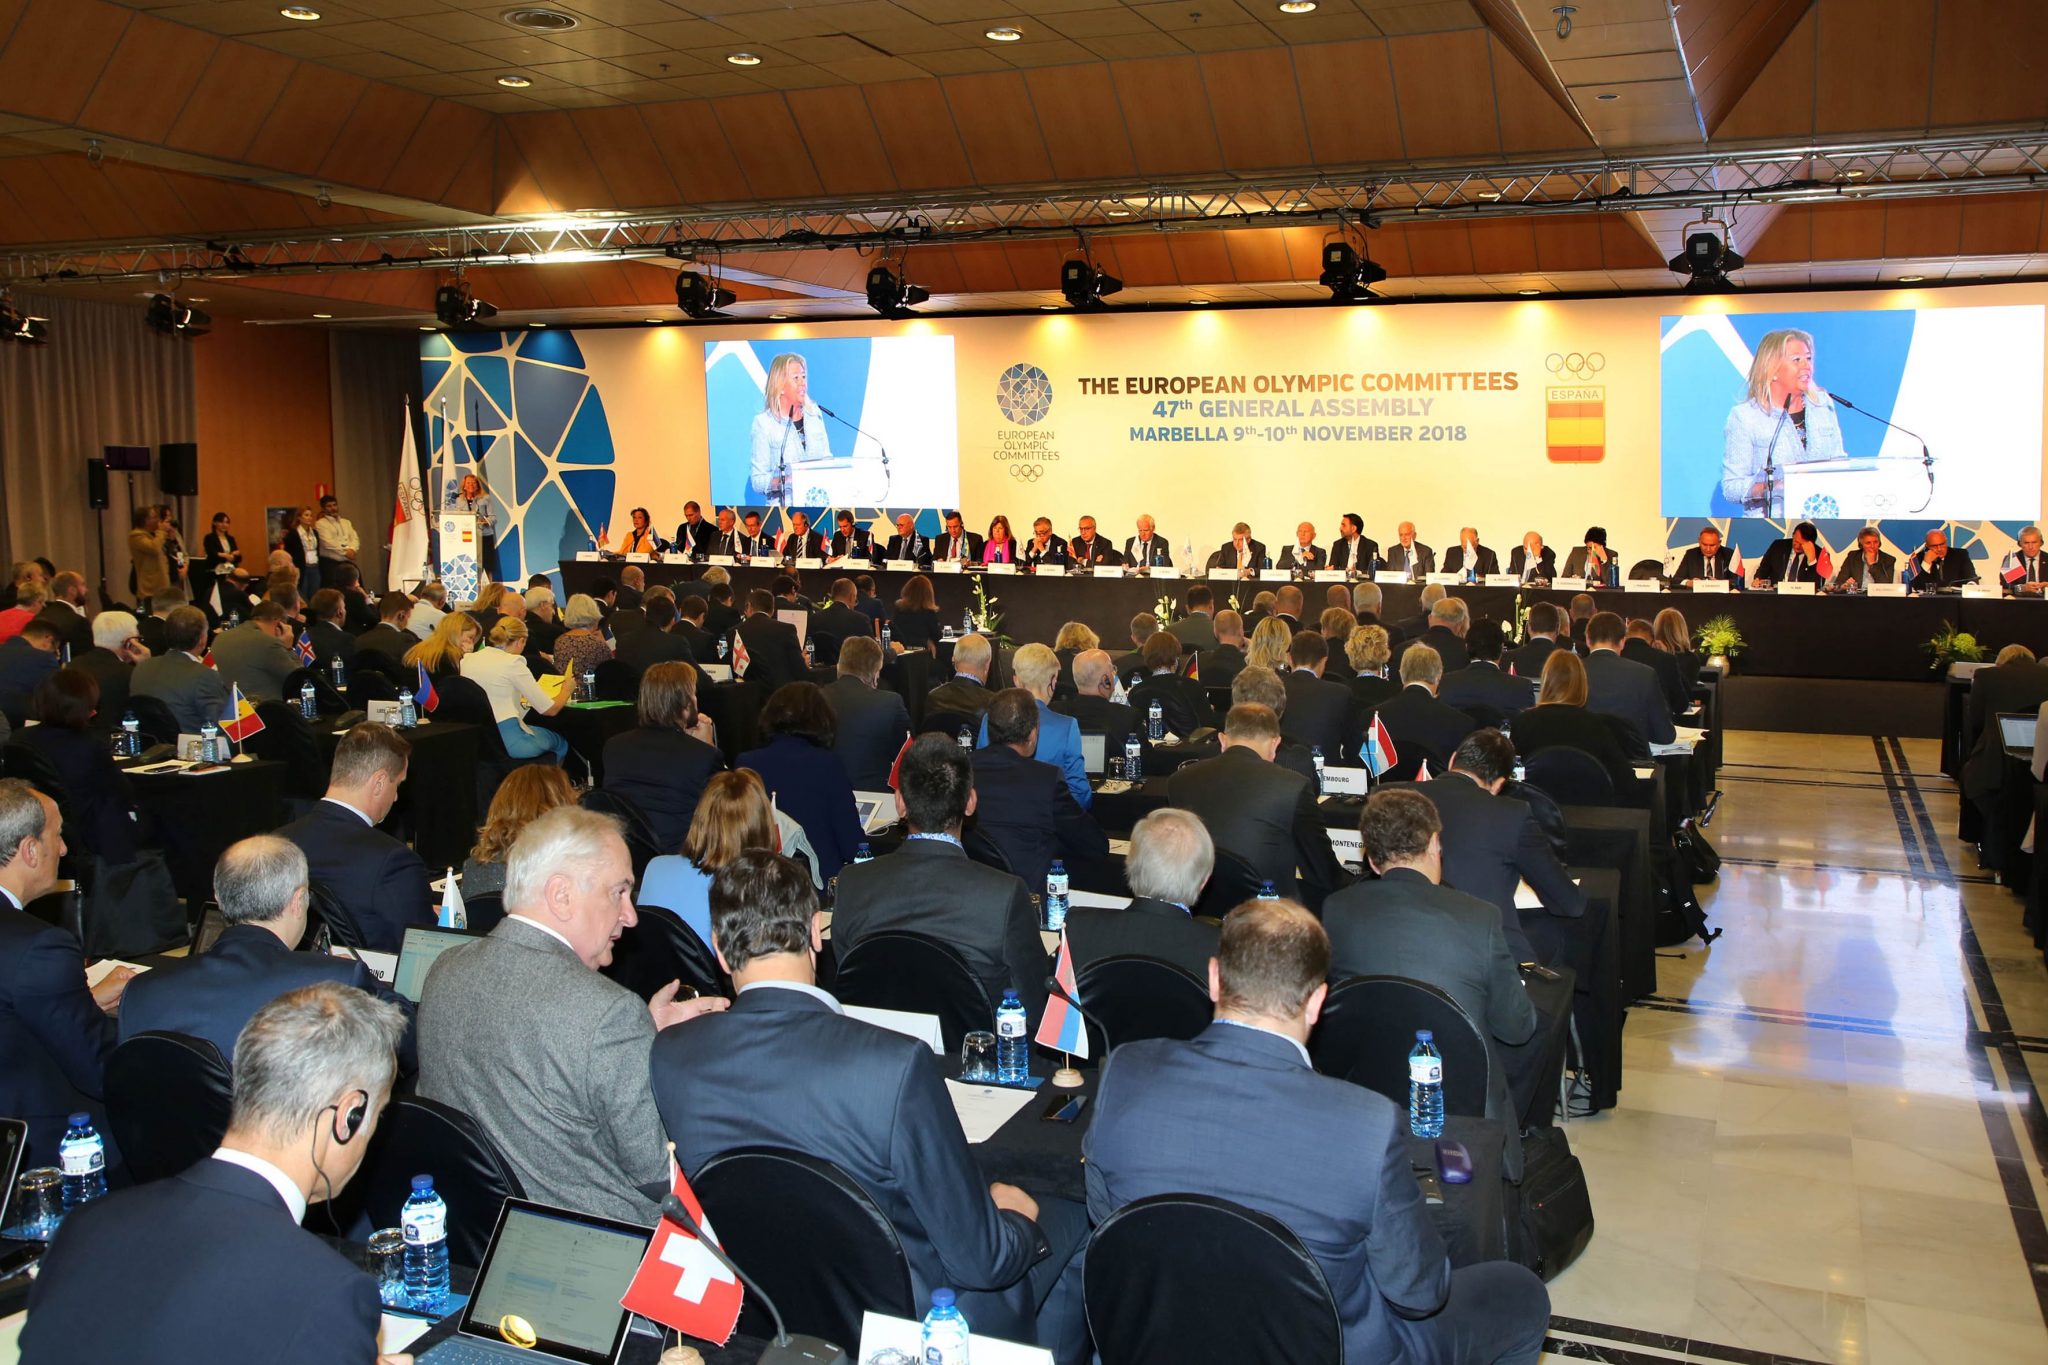 Marbella inaugura la 47 edición de la Asamblea de los comités olímpicos europeos